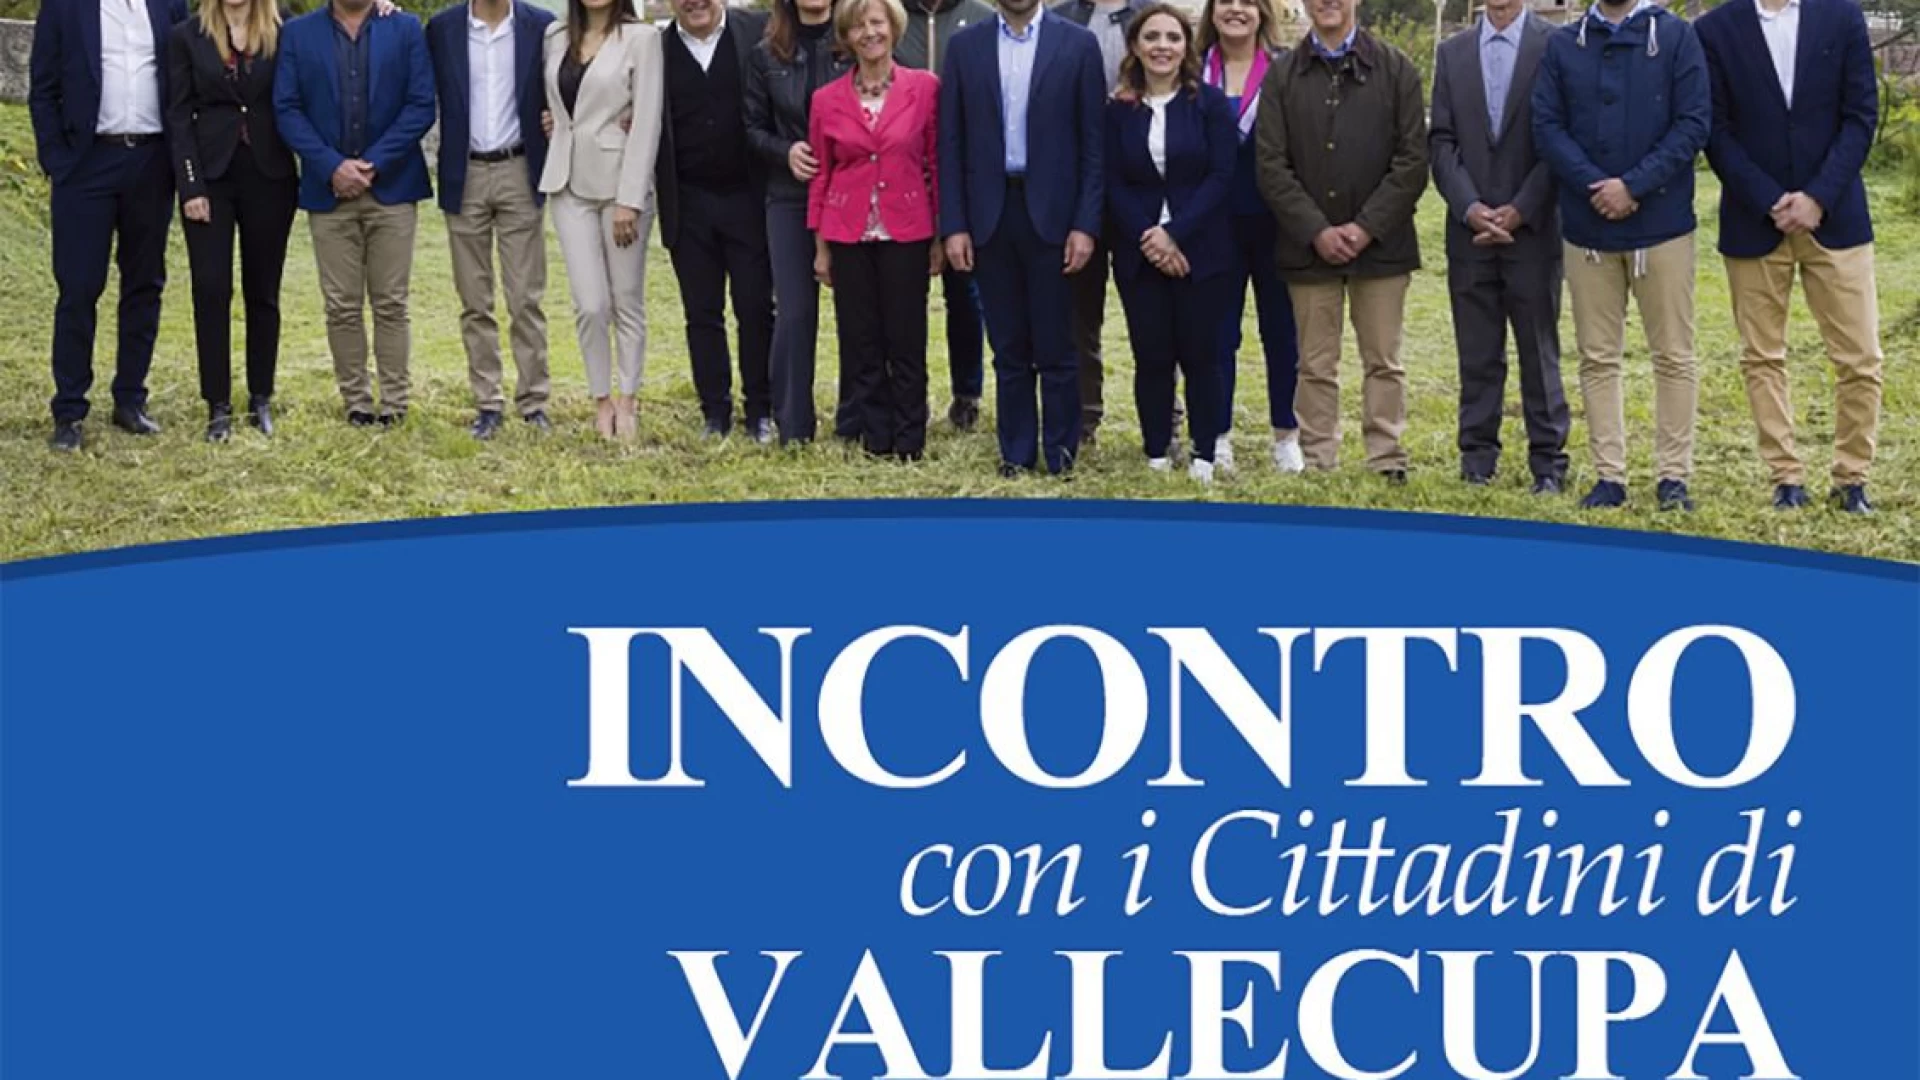 Venafro : la nota di Gianni Vaccone. Intanto la lista di Ricci domenica incontra gli elettori di Vallecupa.